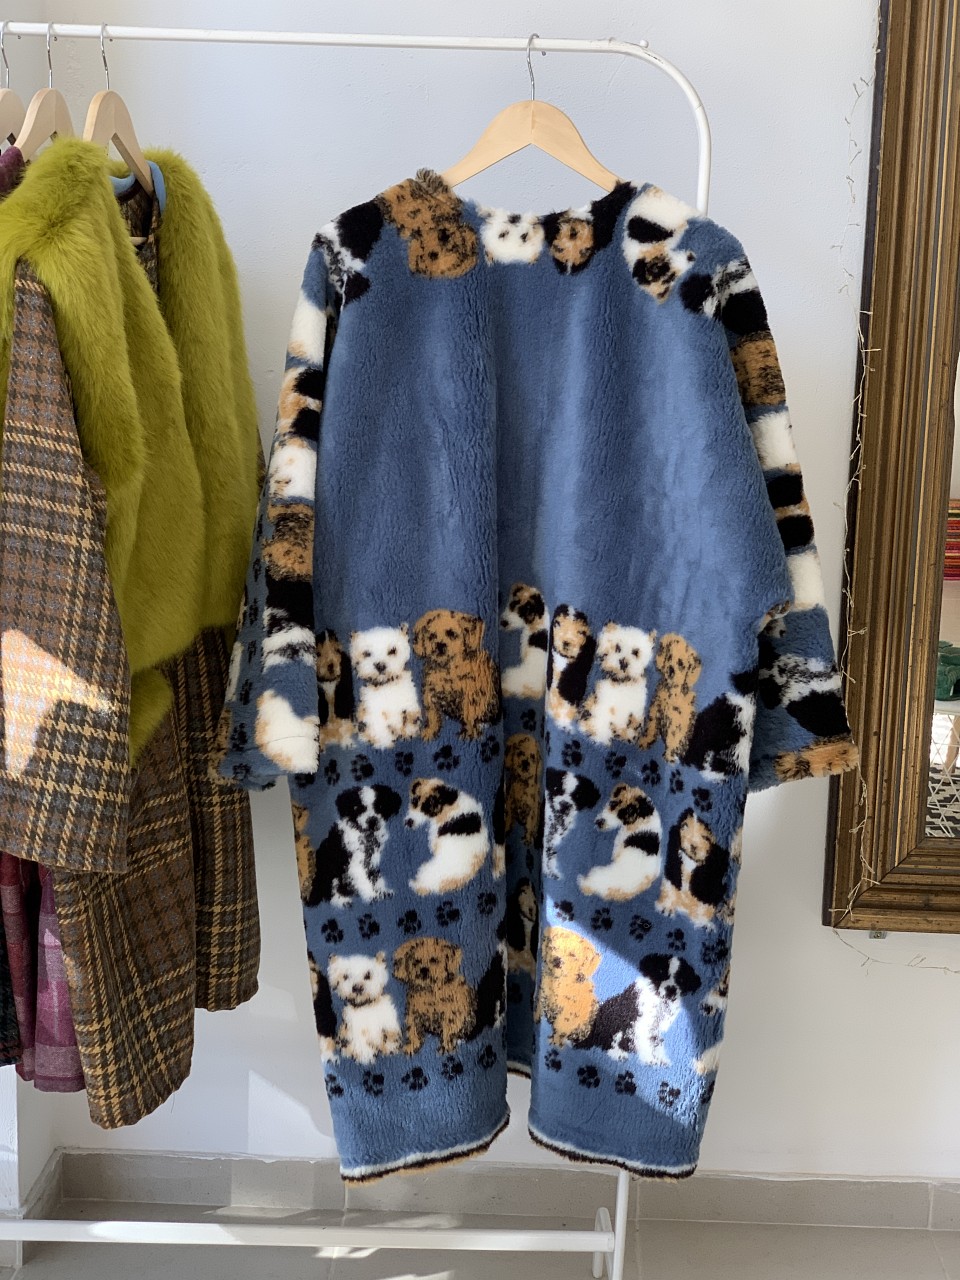 Tutu Skirt Fur Coat with Puppies